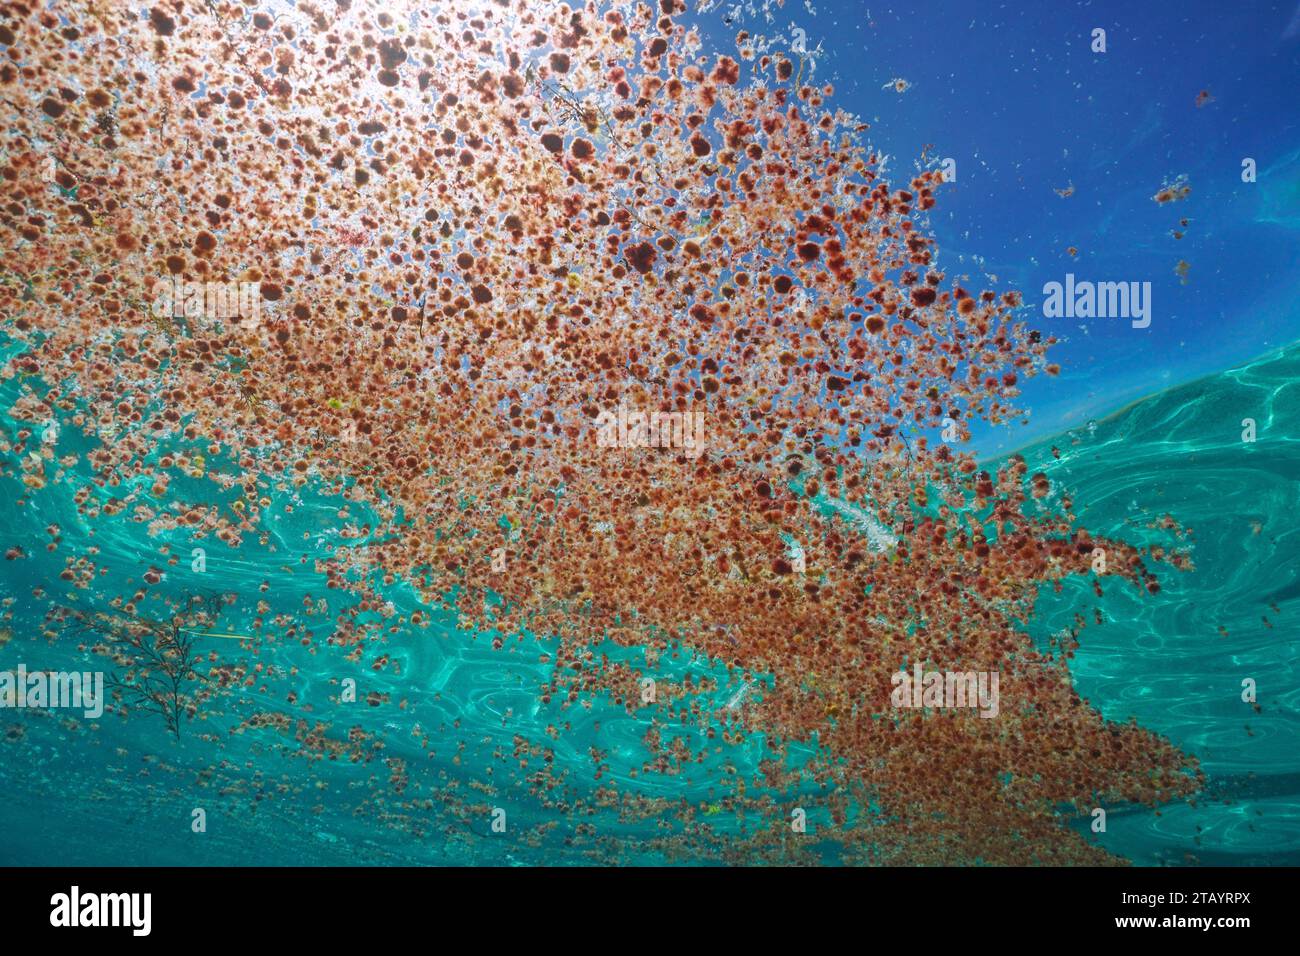 Agrégation d'algues rouges Asparagopsis armata au stade tétrasporophyte flottant à la surface de l'eau, vu sous-marin, océan Atlantique Banque D'Images